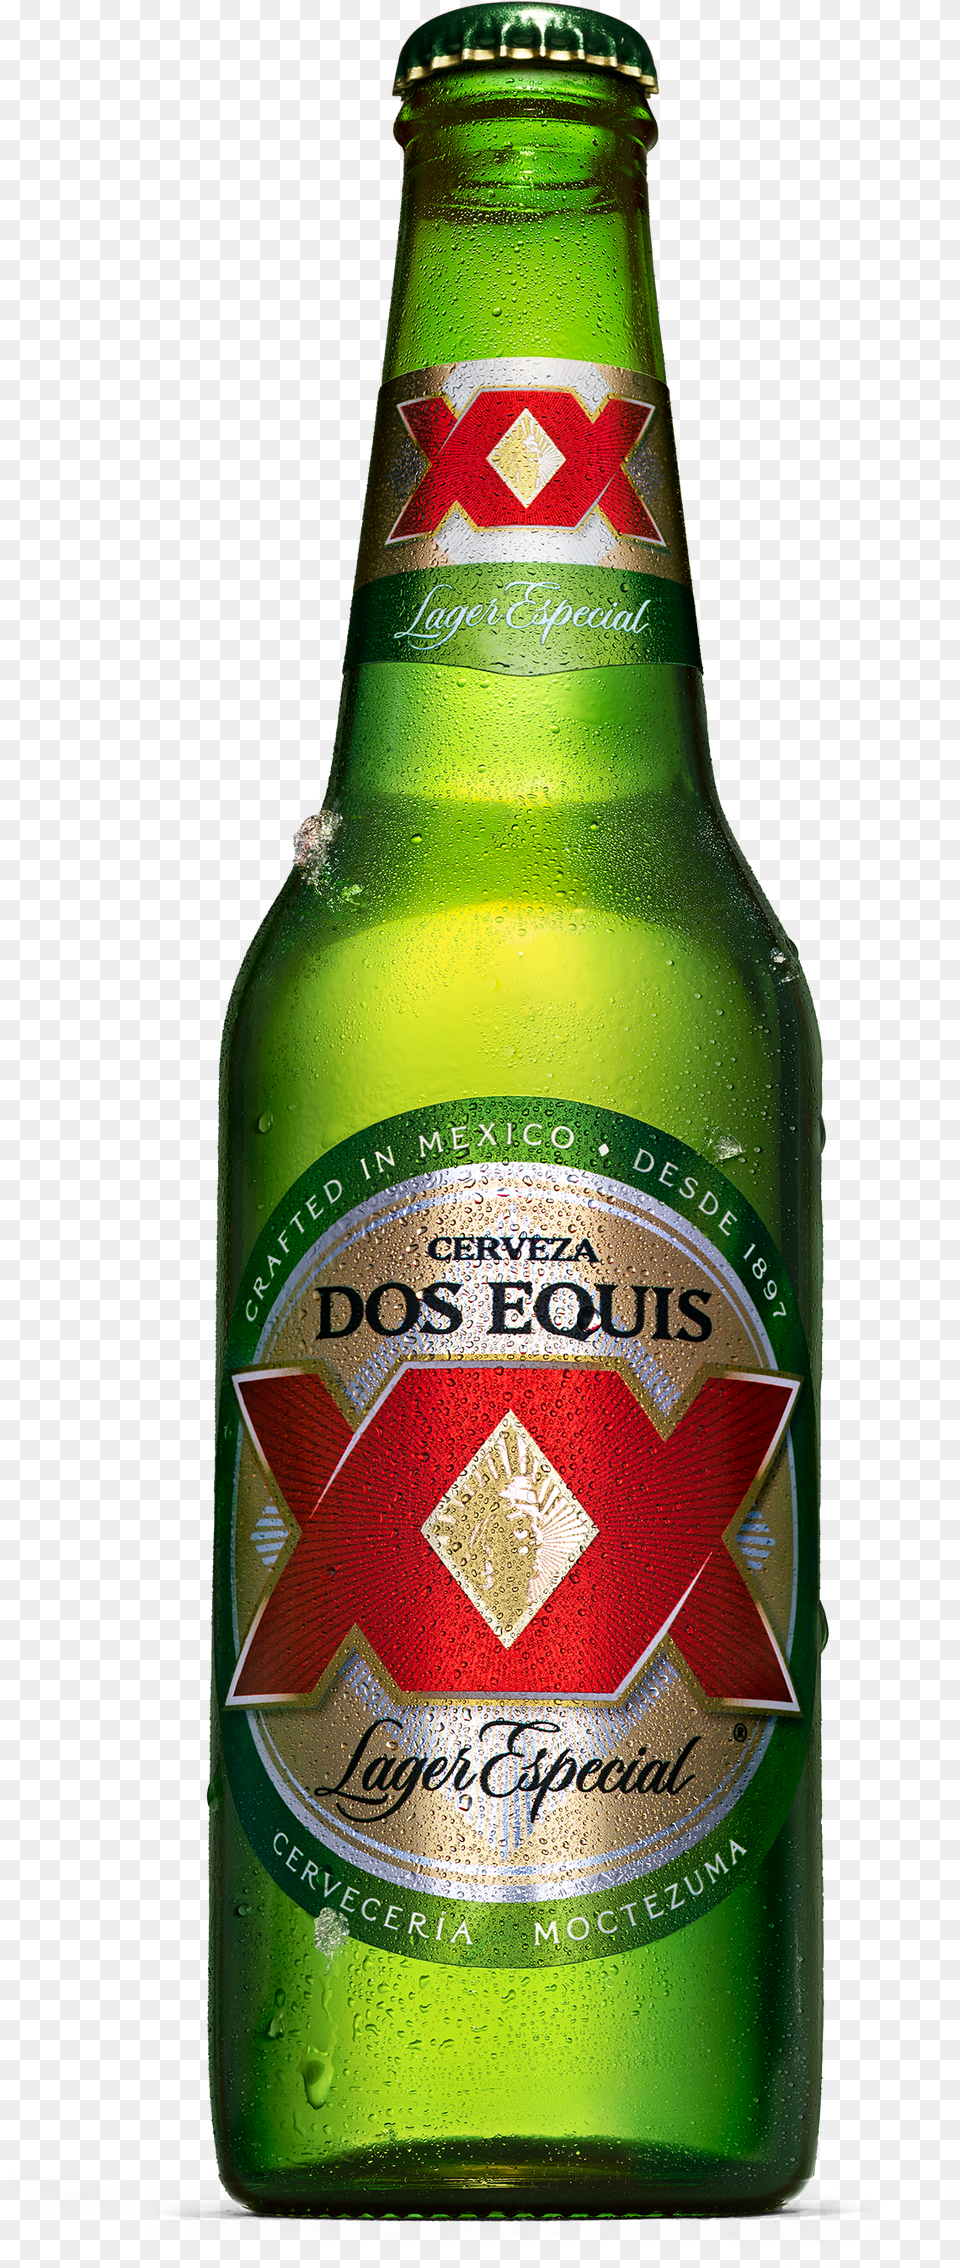 Dos Equis Lager Beer Bottle, Alcohol, Beer Bottle, Beverage, Liquor Png Image